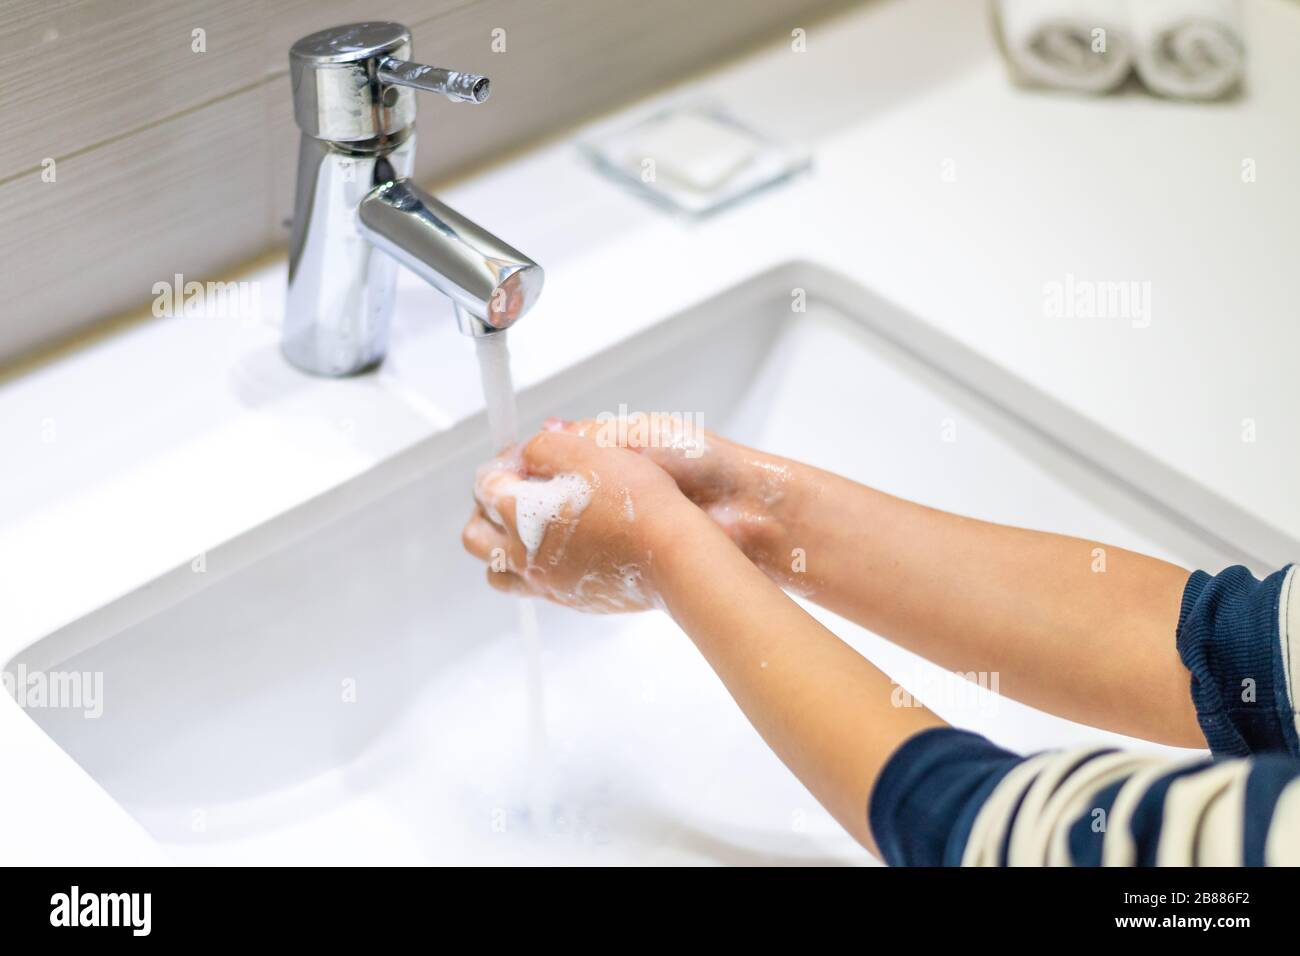 Kleinkinder waschen sich im Kindergarten in einem Waschtisch die Hände. Konzept der Hygiene, professionelle Kinderbetreuung Stock Foto Stockfoto